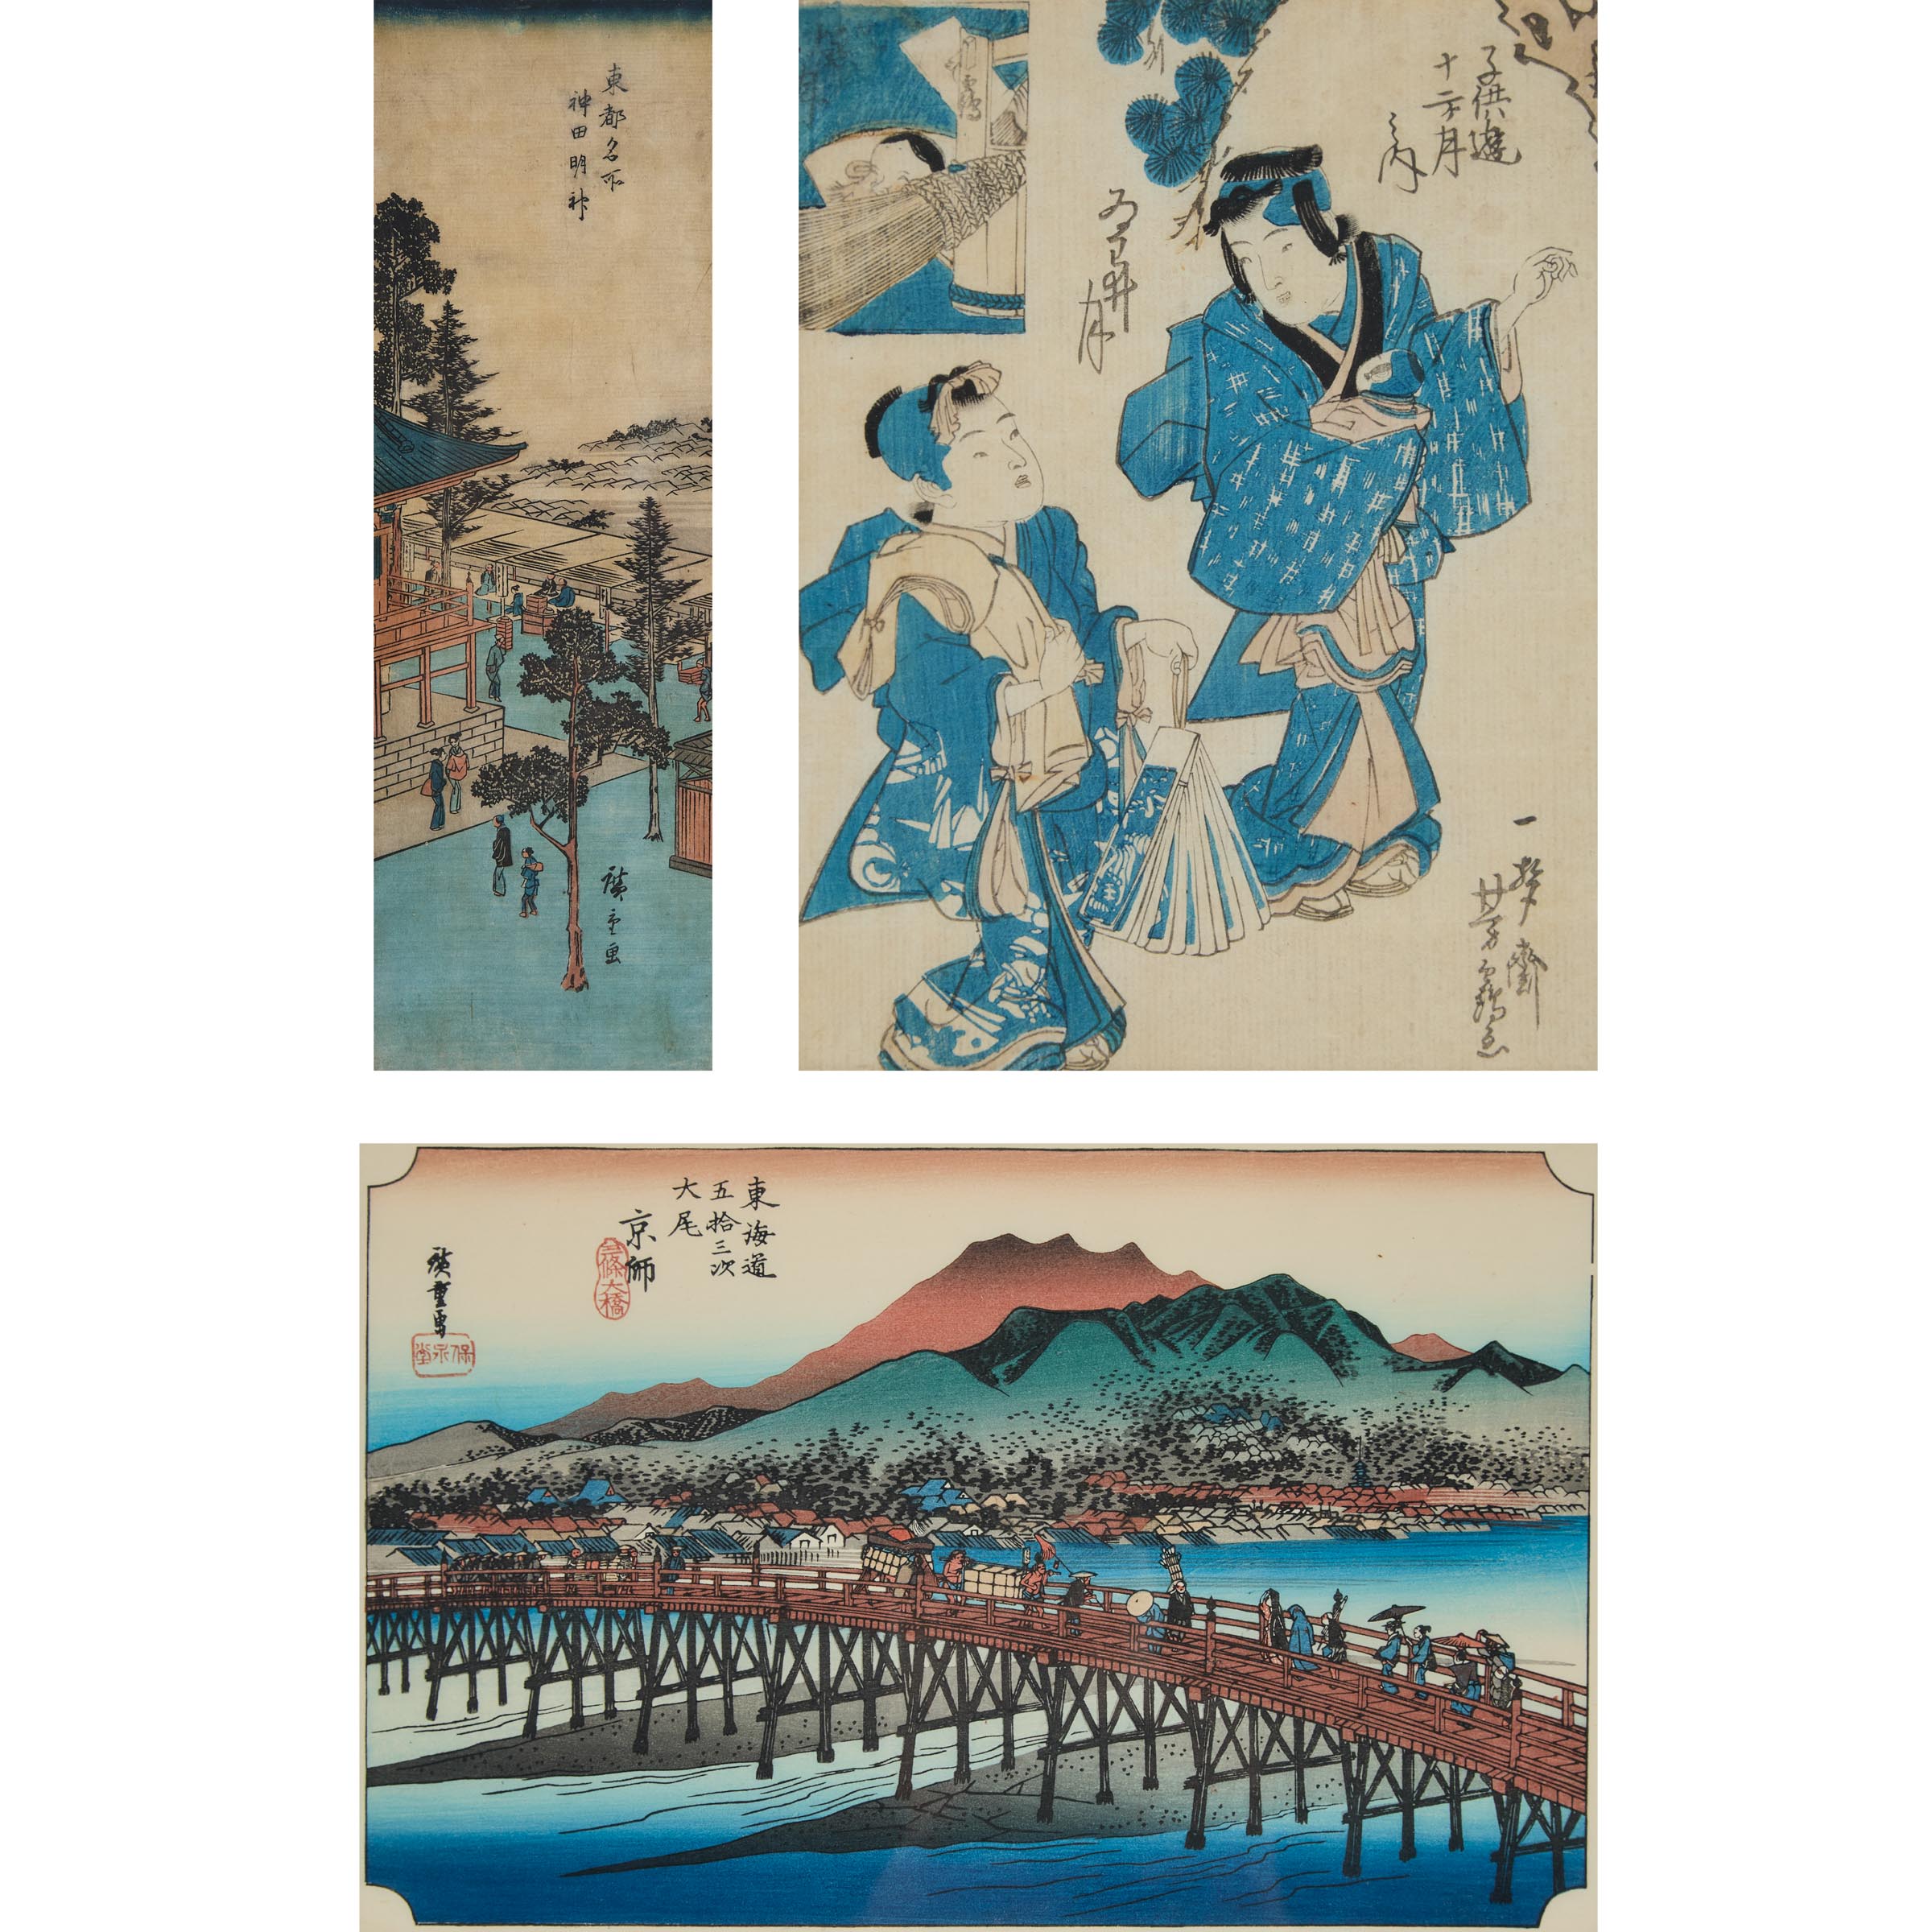 Utagawa Hiroshige (1797-1858) and